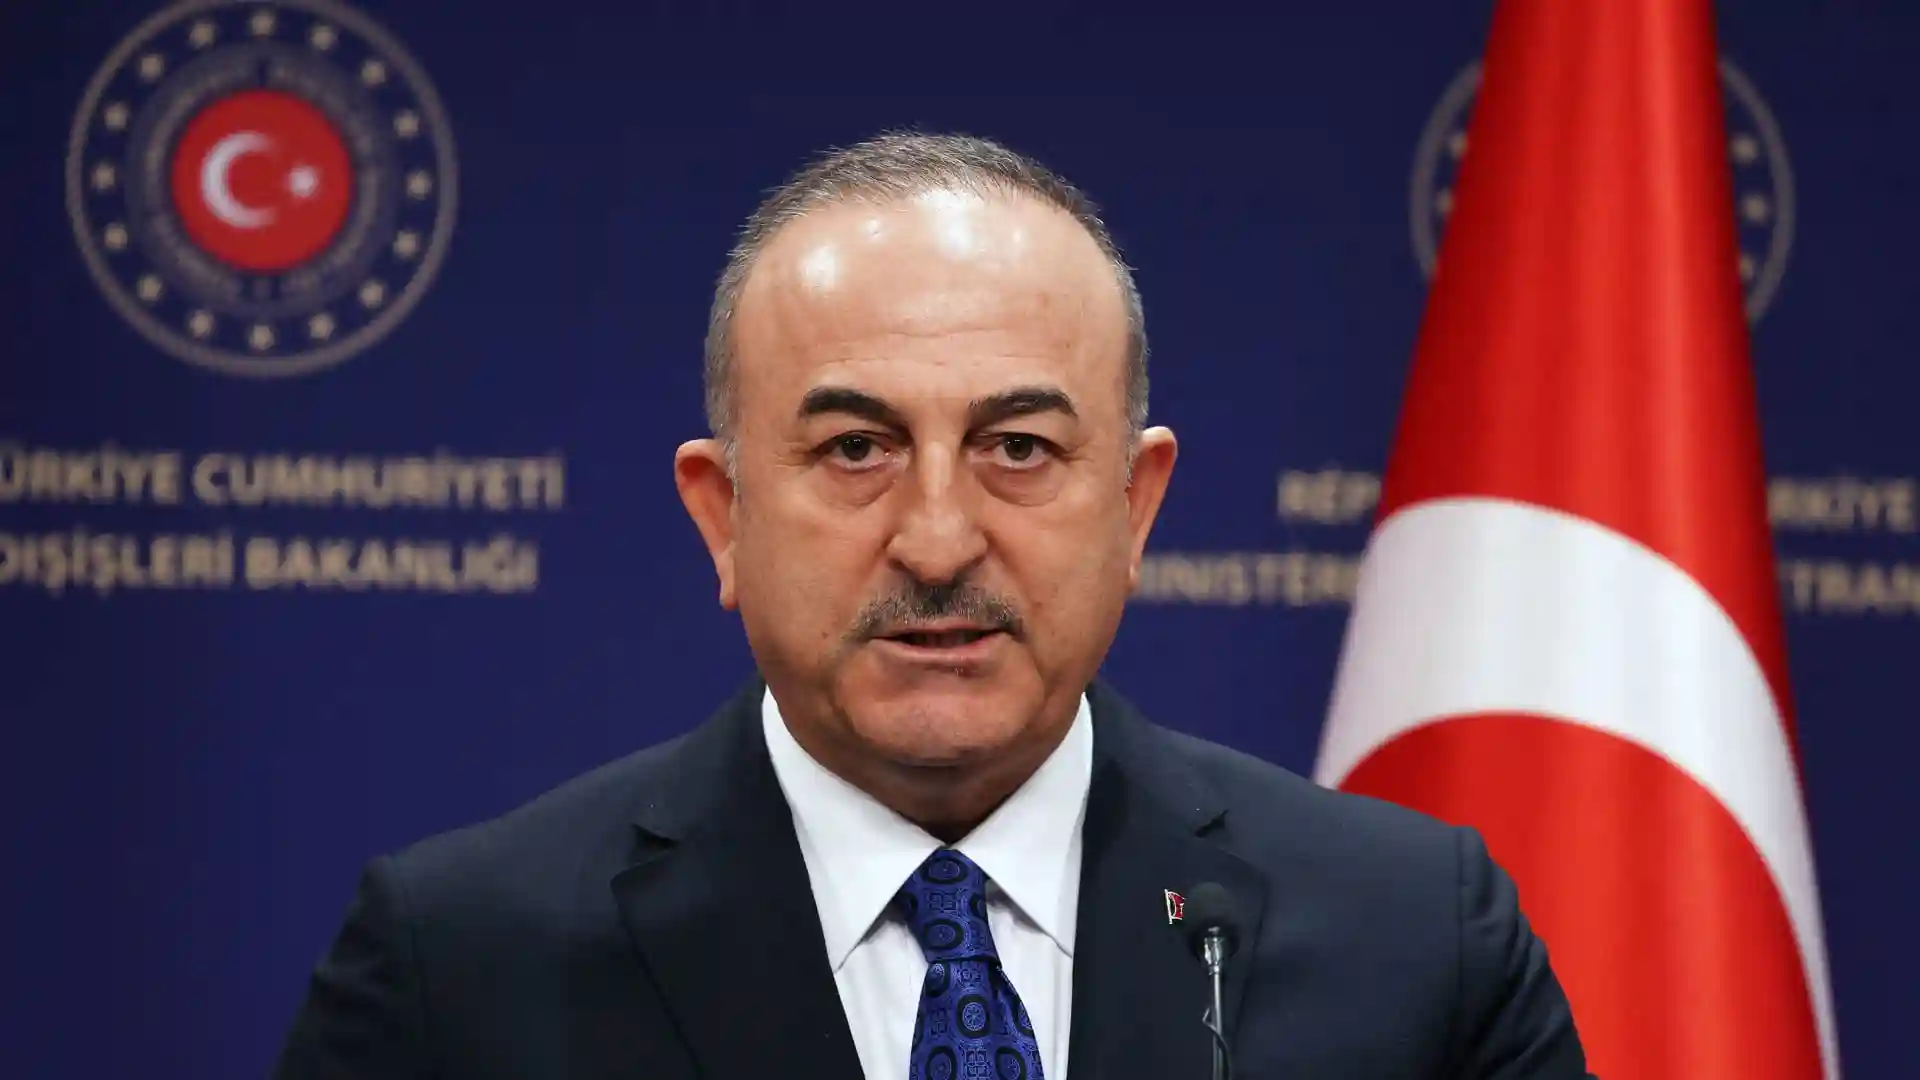 وزير خارجية تركيا يعلن نقل سفارة بلاده إلى بورتسودان بعد إطلاق النار على سيارة السفير بالخرطوم